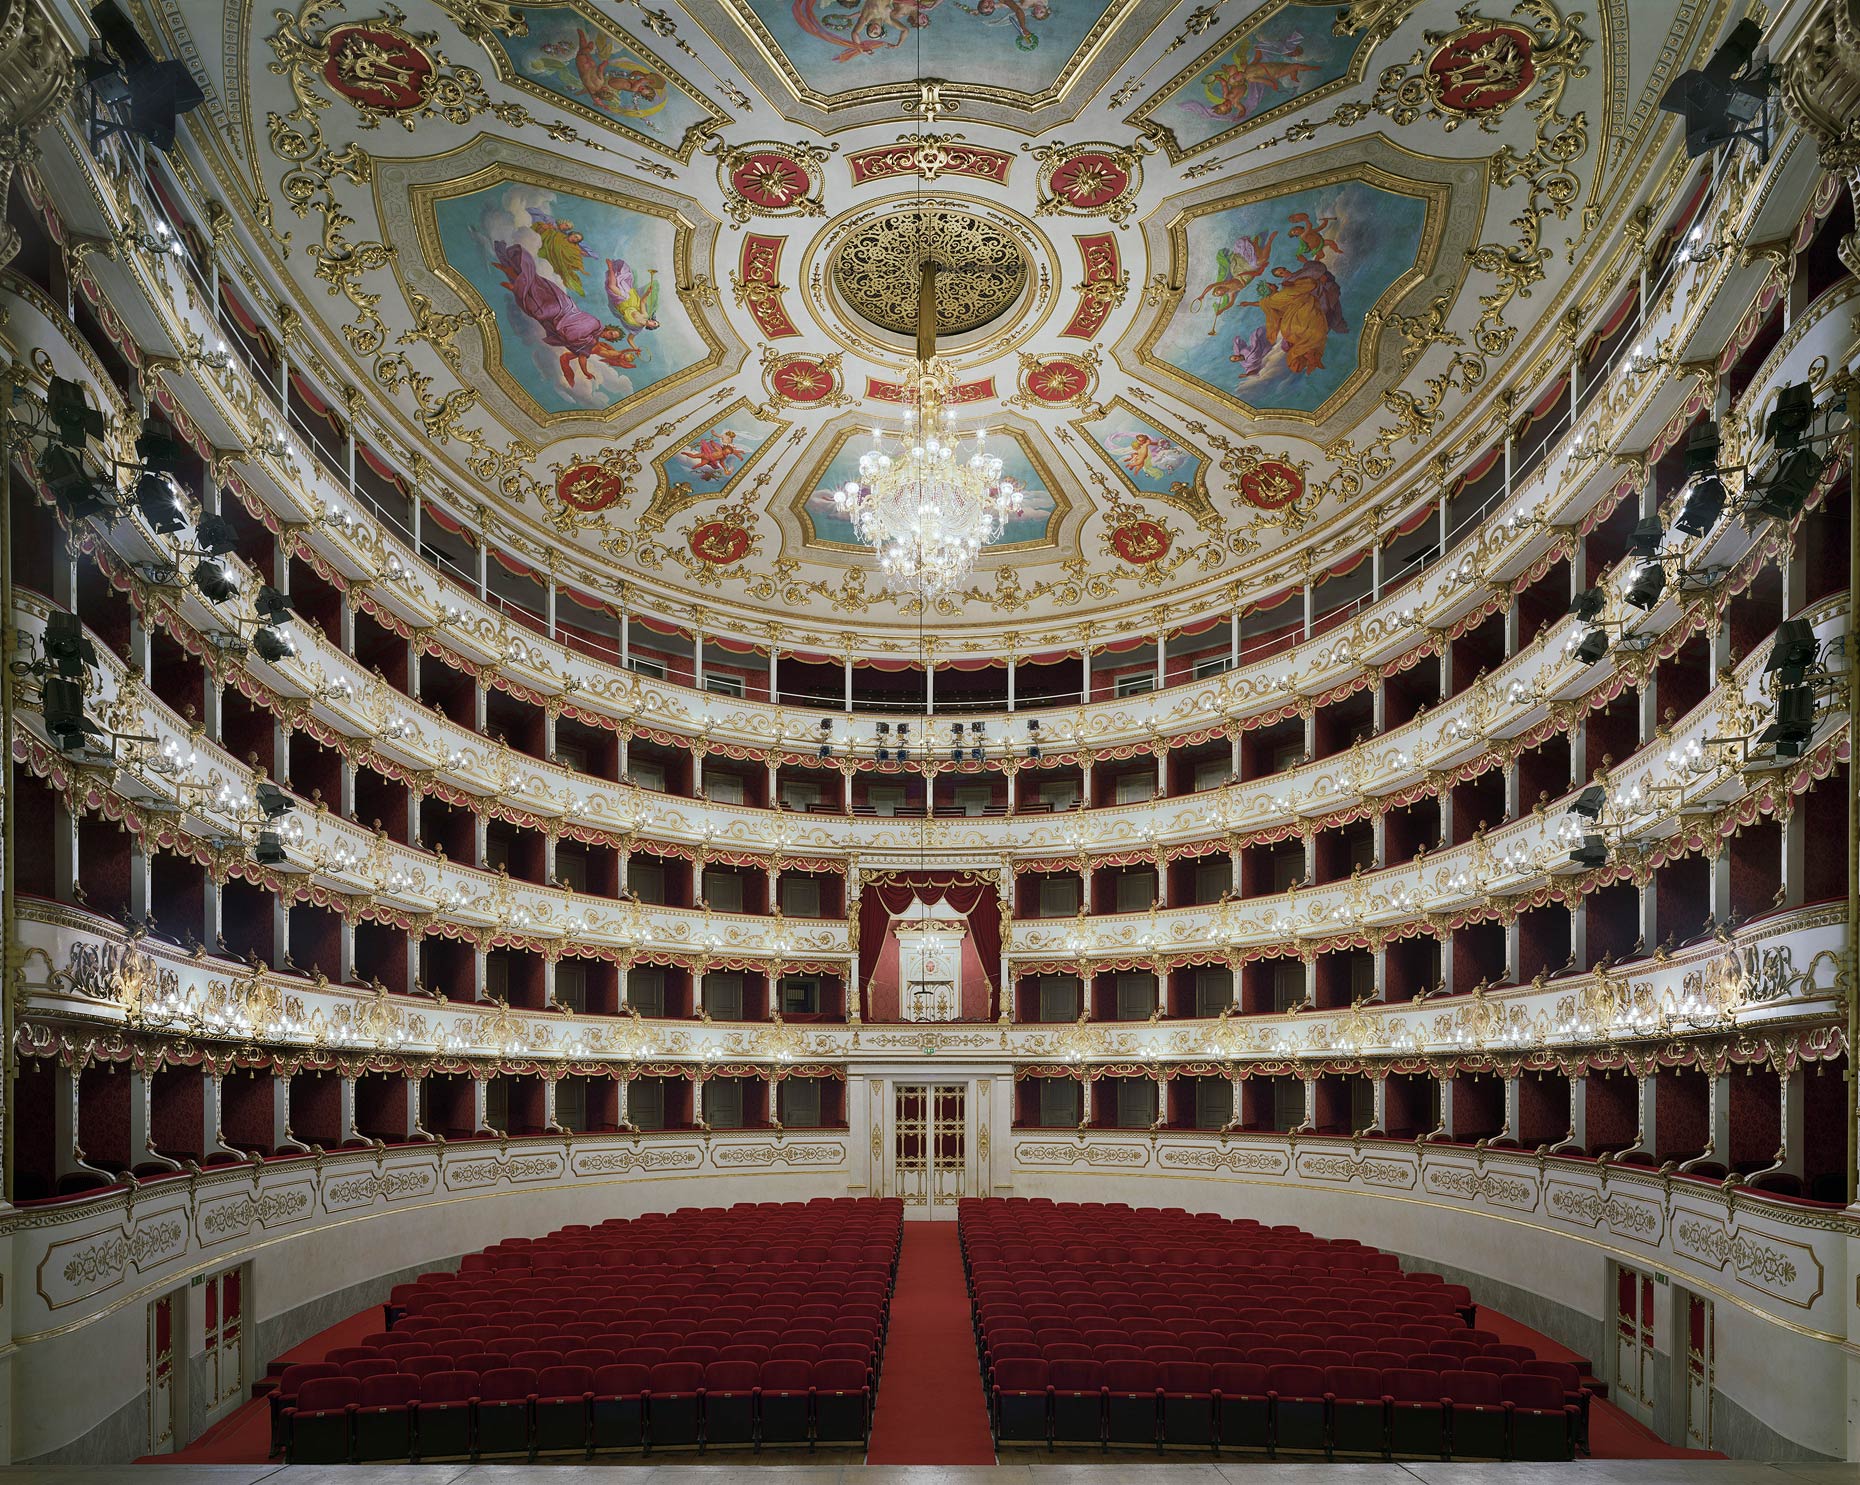 Teatro Municipale Valli, Reggio Emilia, Italy, 2010